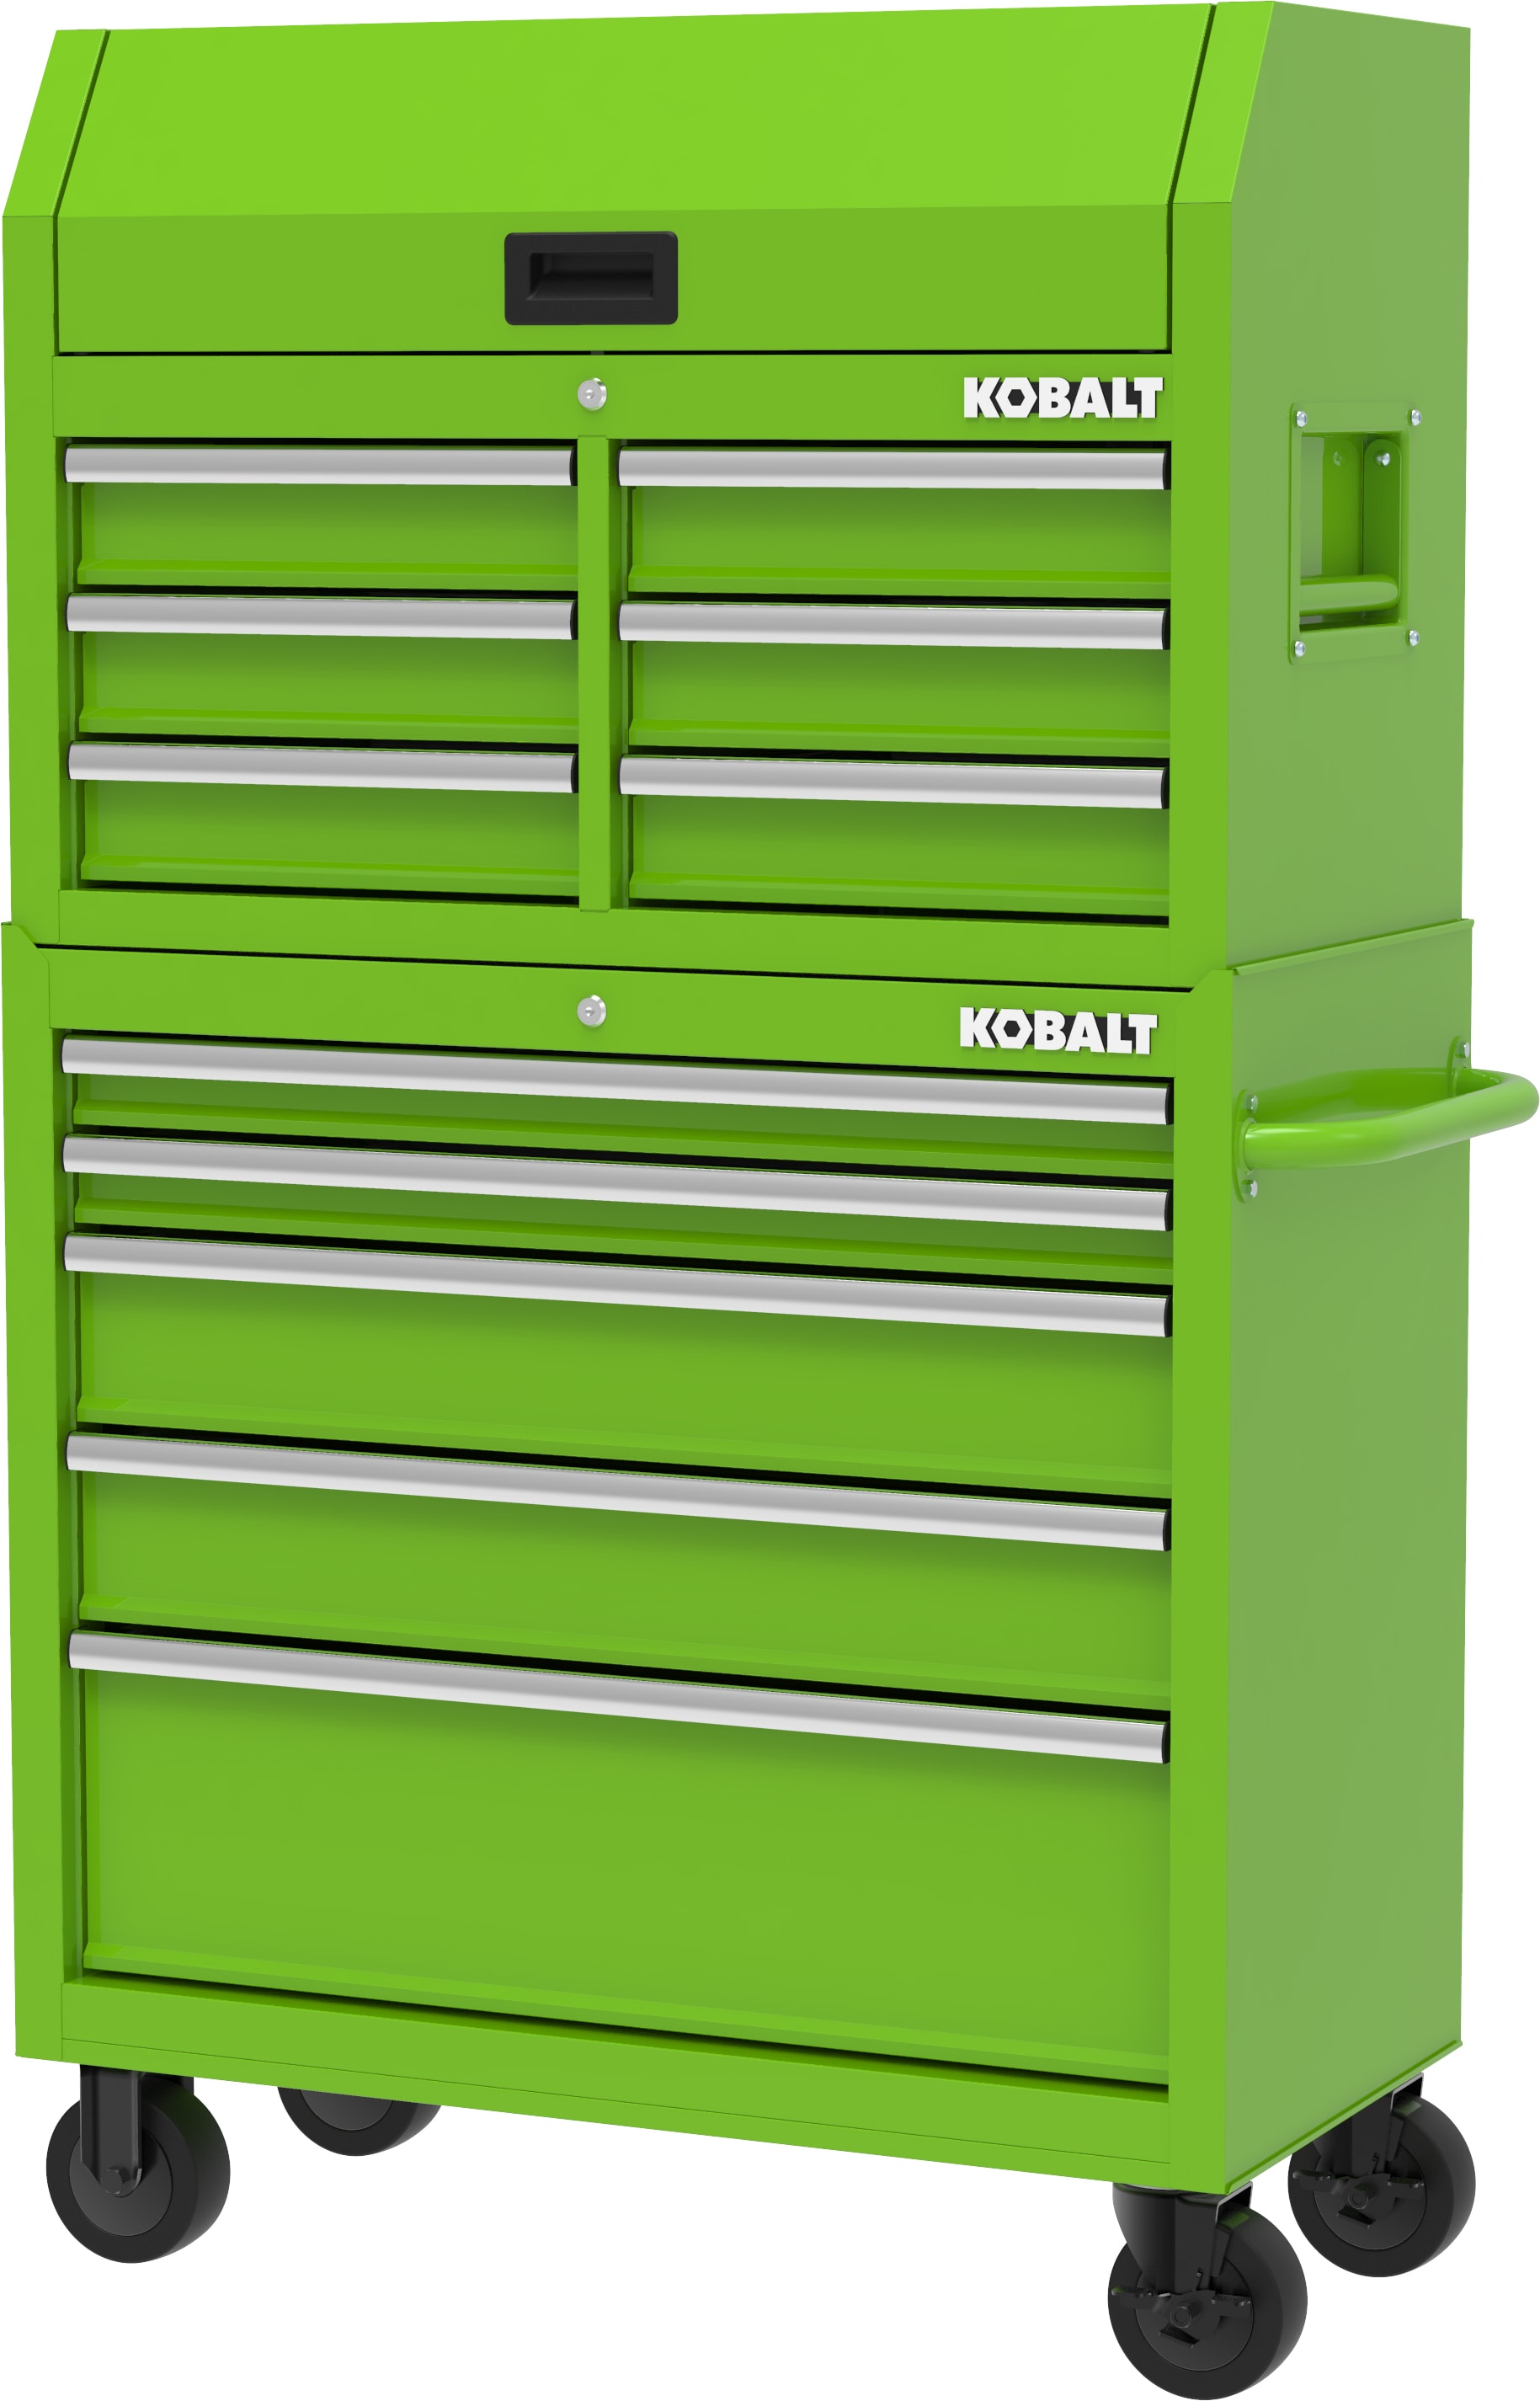 Kobalt 36-in W x 37.8-in H 5-Drawer Steel Rolling Tool Cabinet (Green)